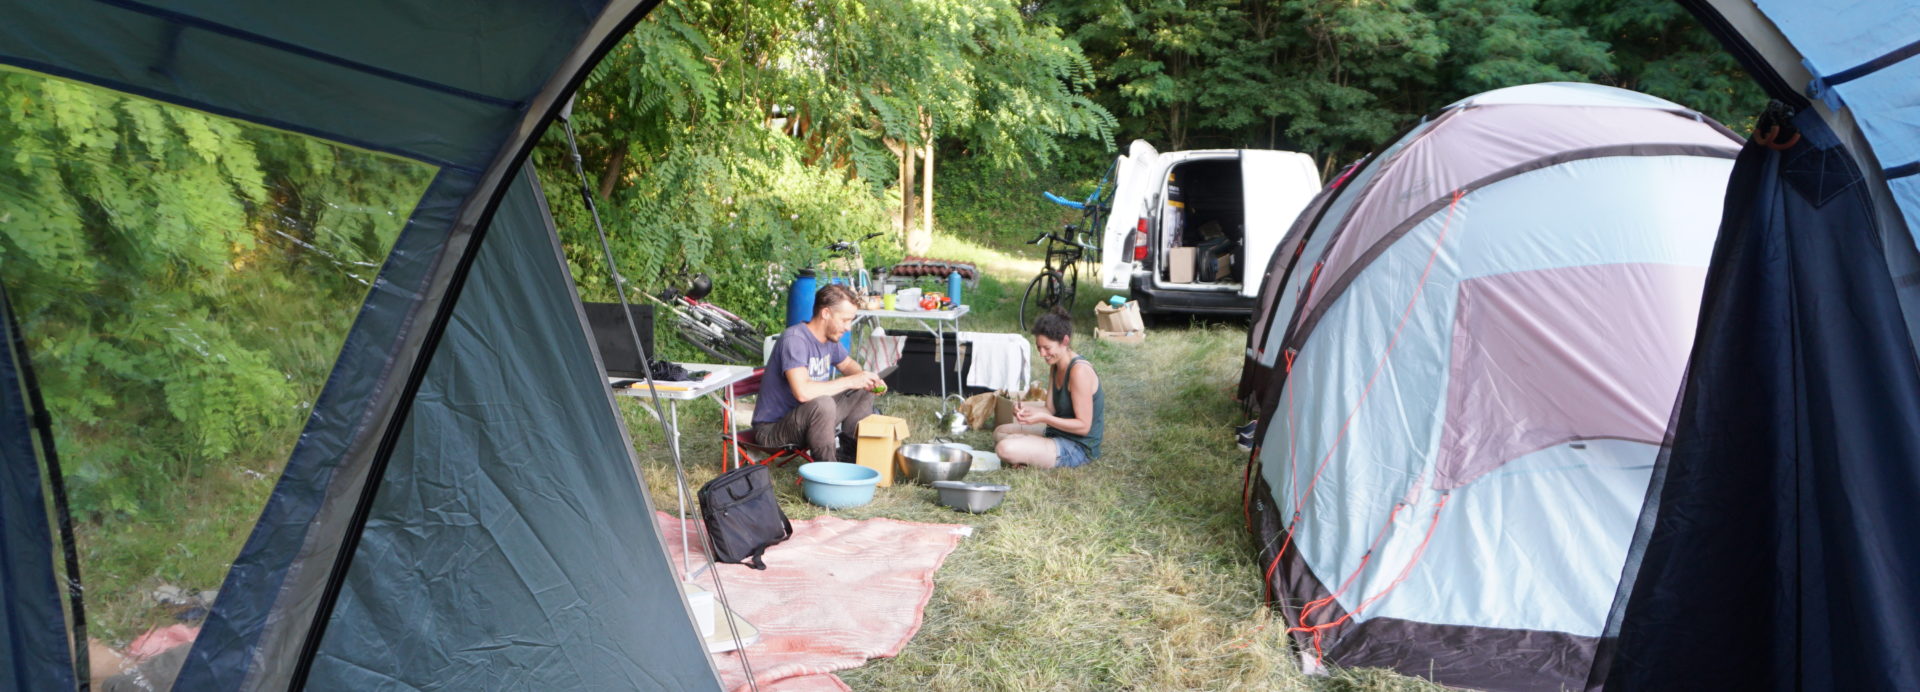 La tente est ouverte sur le campement